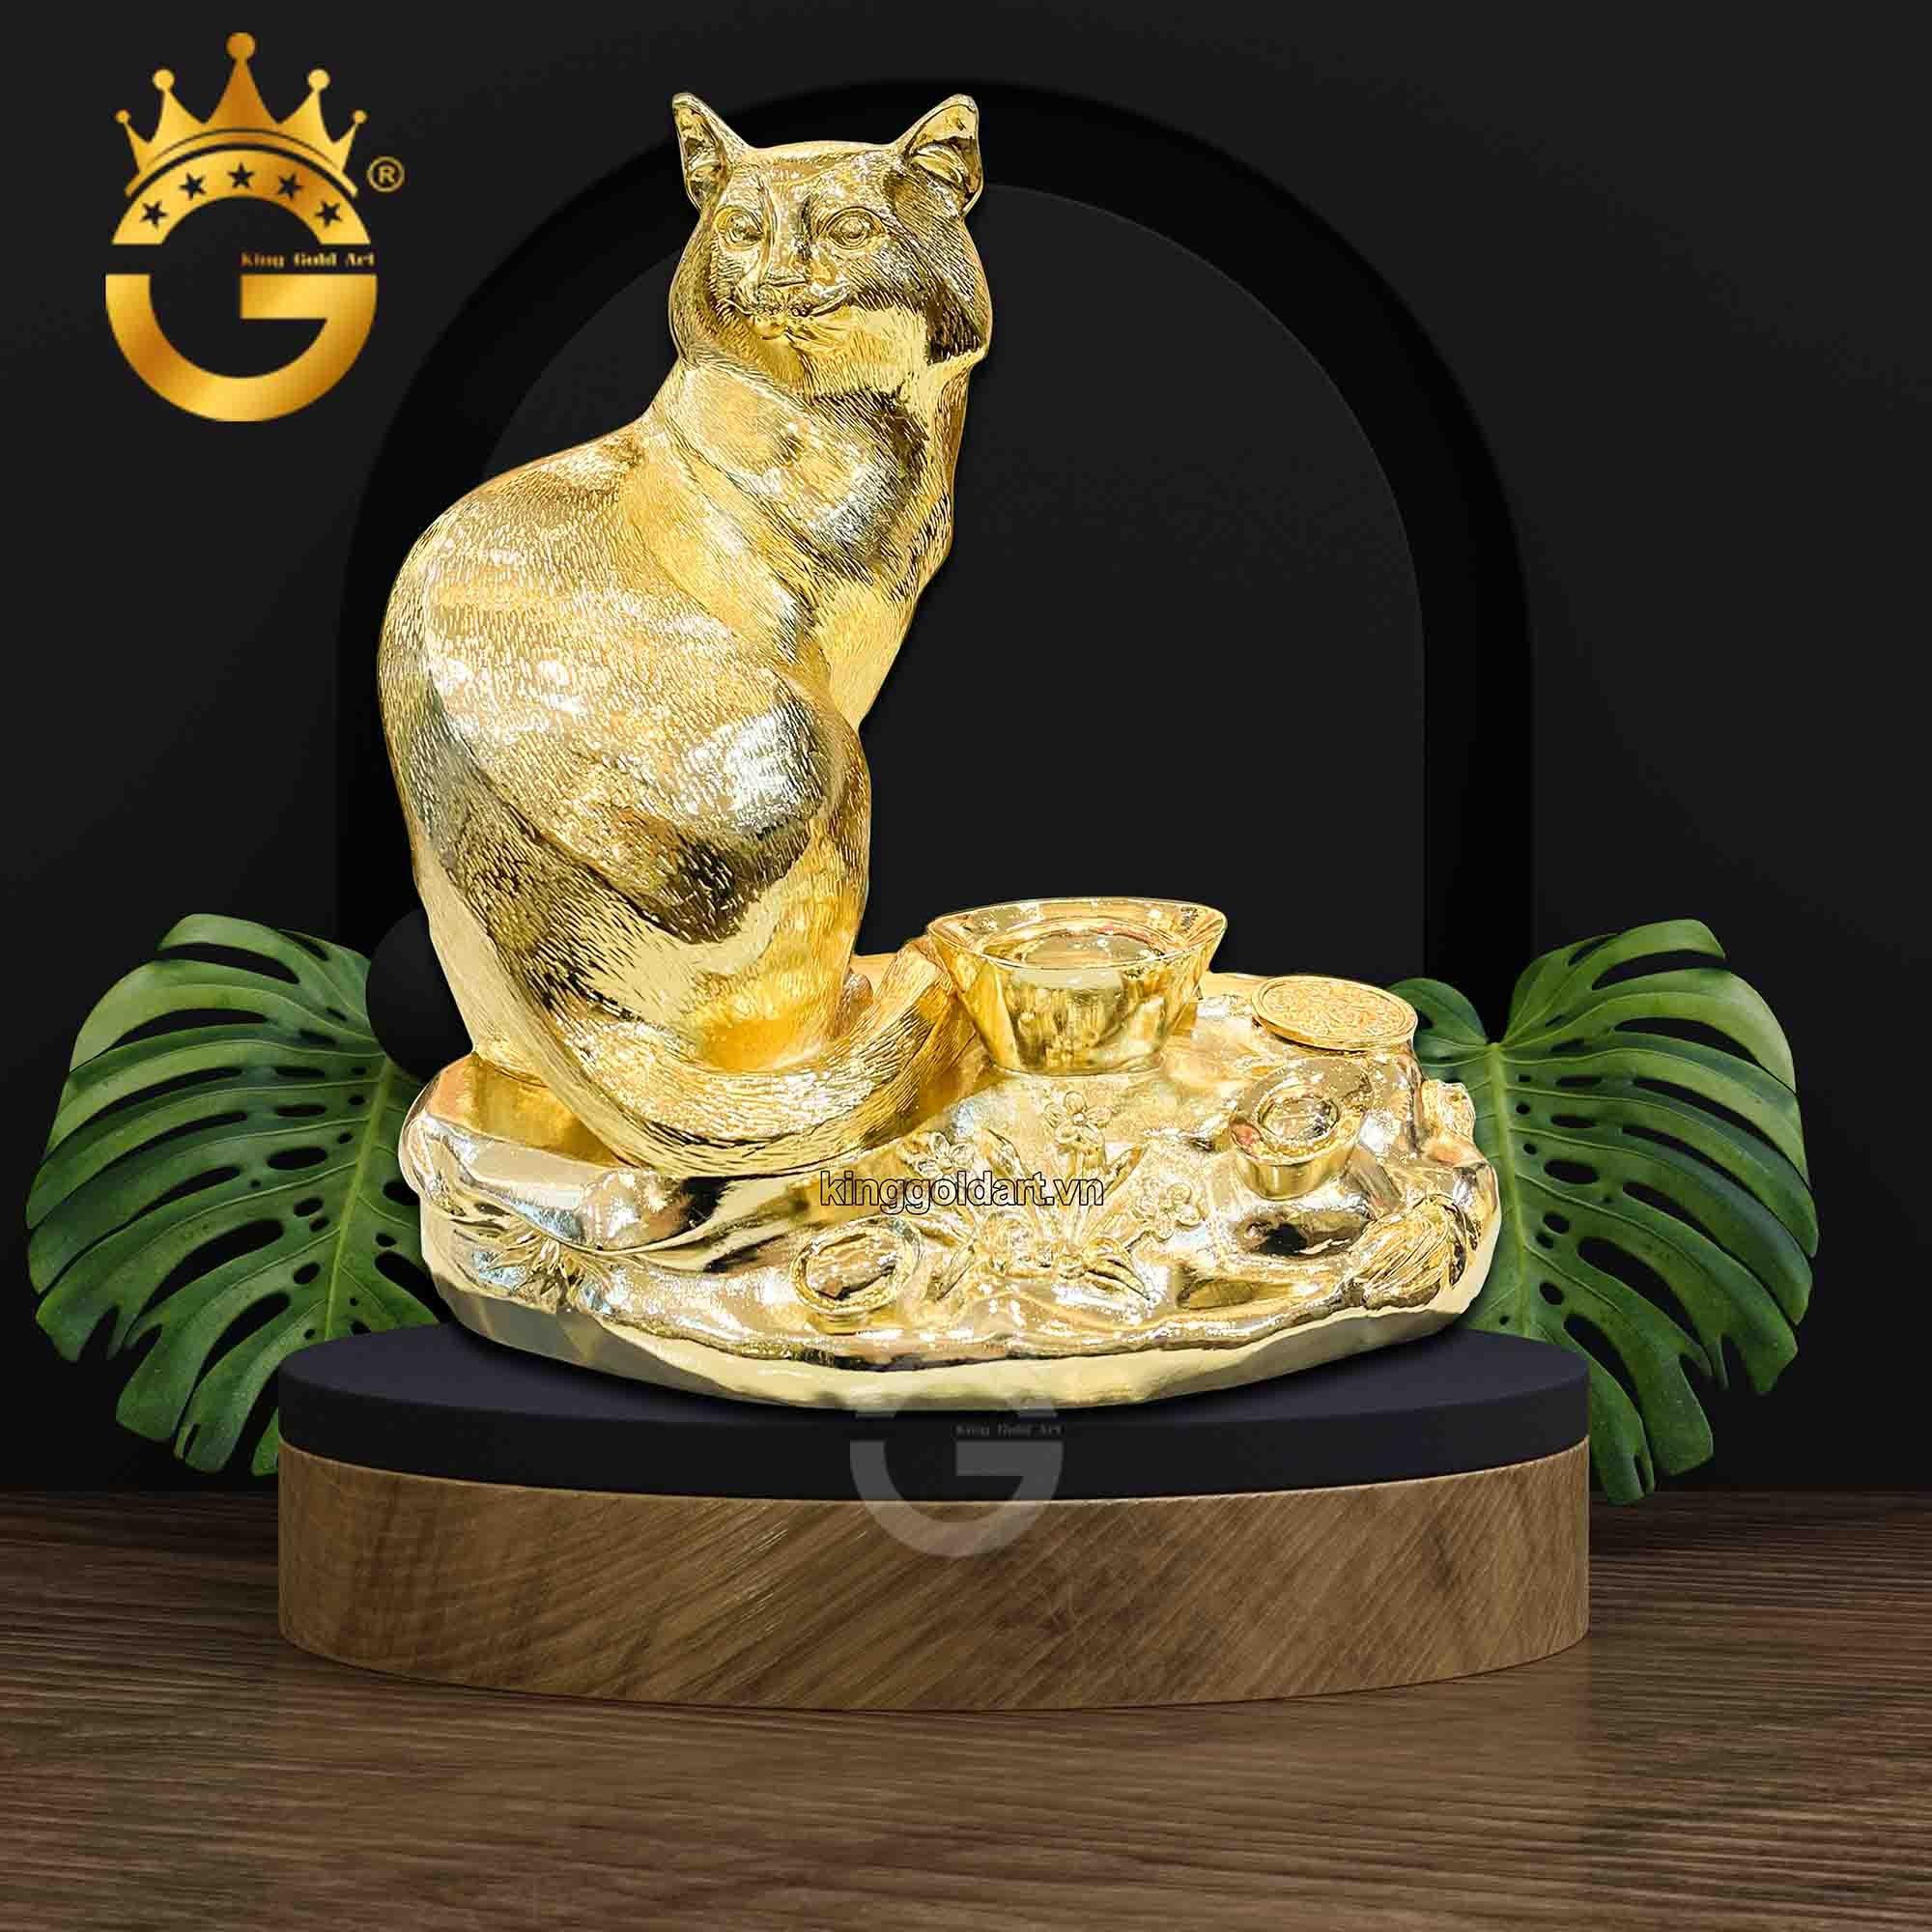 Quà tặng tượng mèo mạ vàng dành tặng sếp tuổi Mão